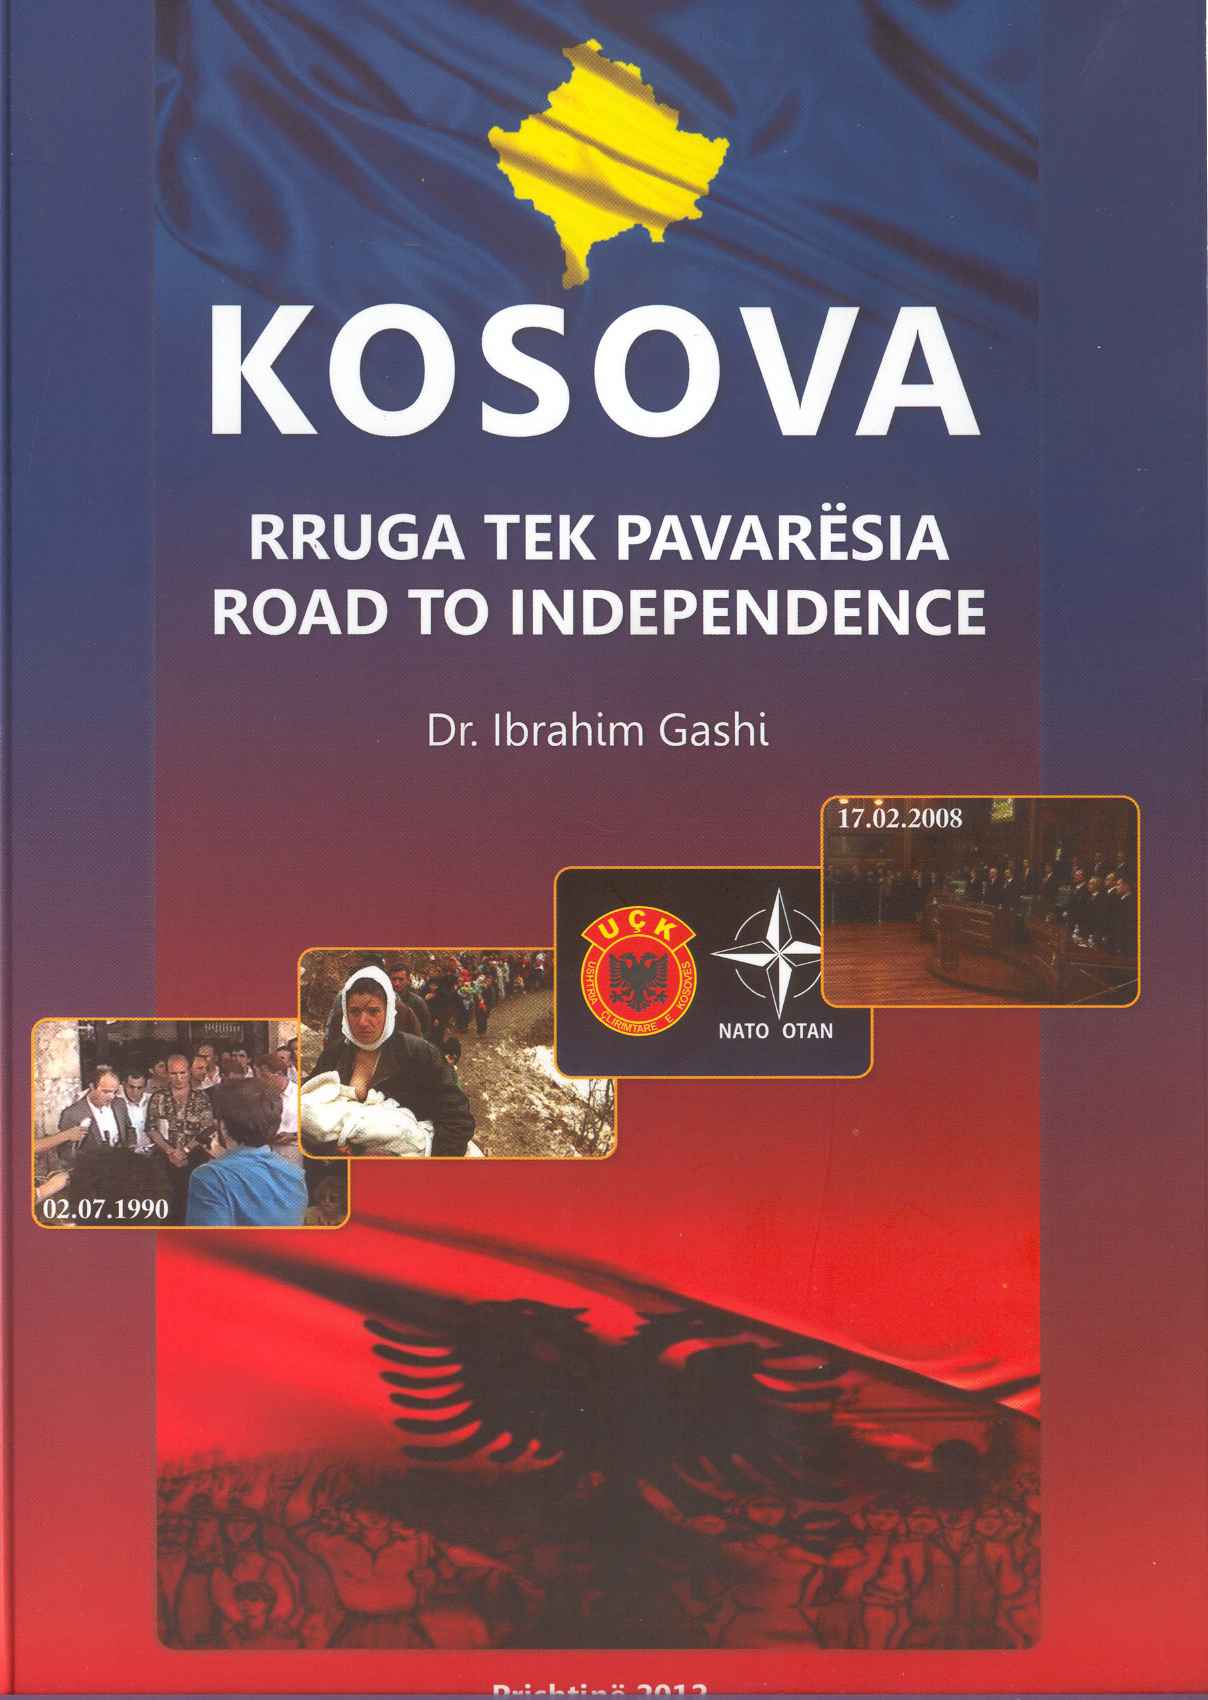 AKR: Kosova në konferencën në Berdo vetëm si shtet